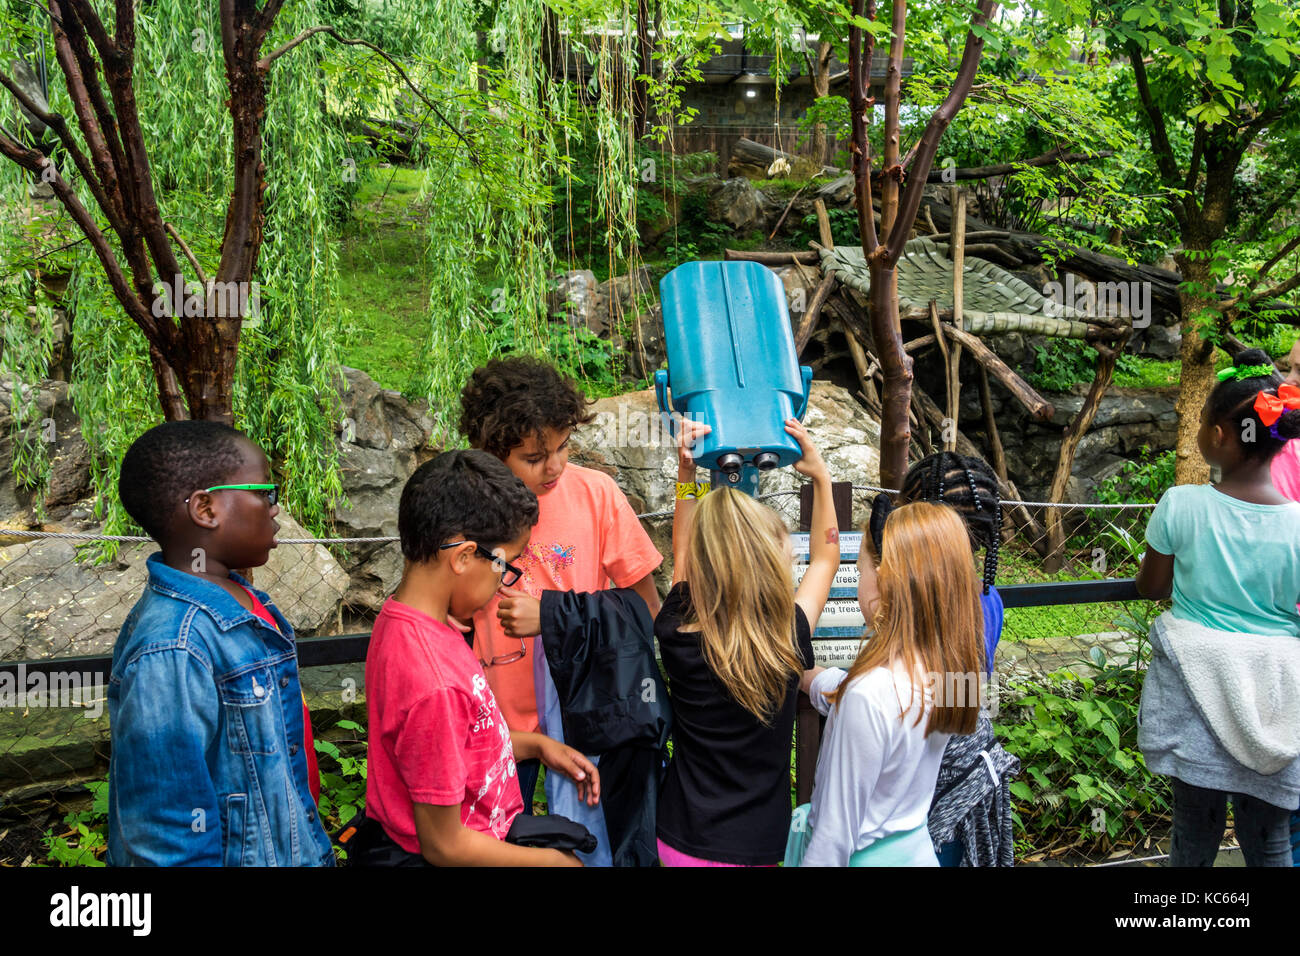 Washington DC, District of Columbia, National Zoo, Giant Panda, Ausstellungssammlung, junge Jungen, männliche Kinder, Kinder, Jugendliche, Jugendliche Stockfoto